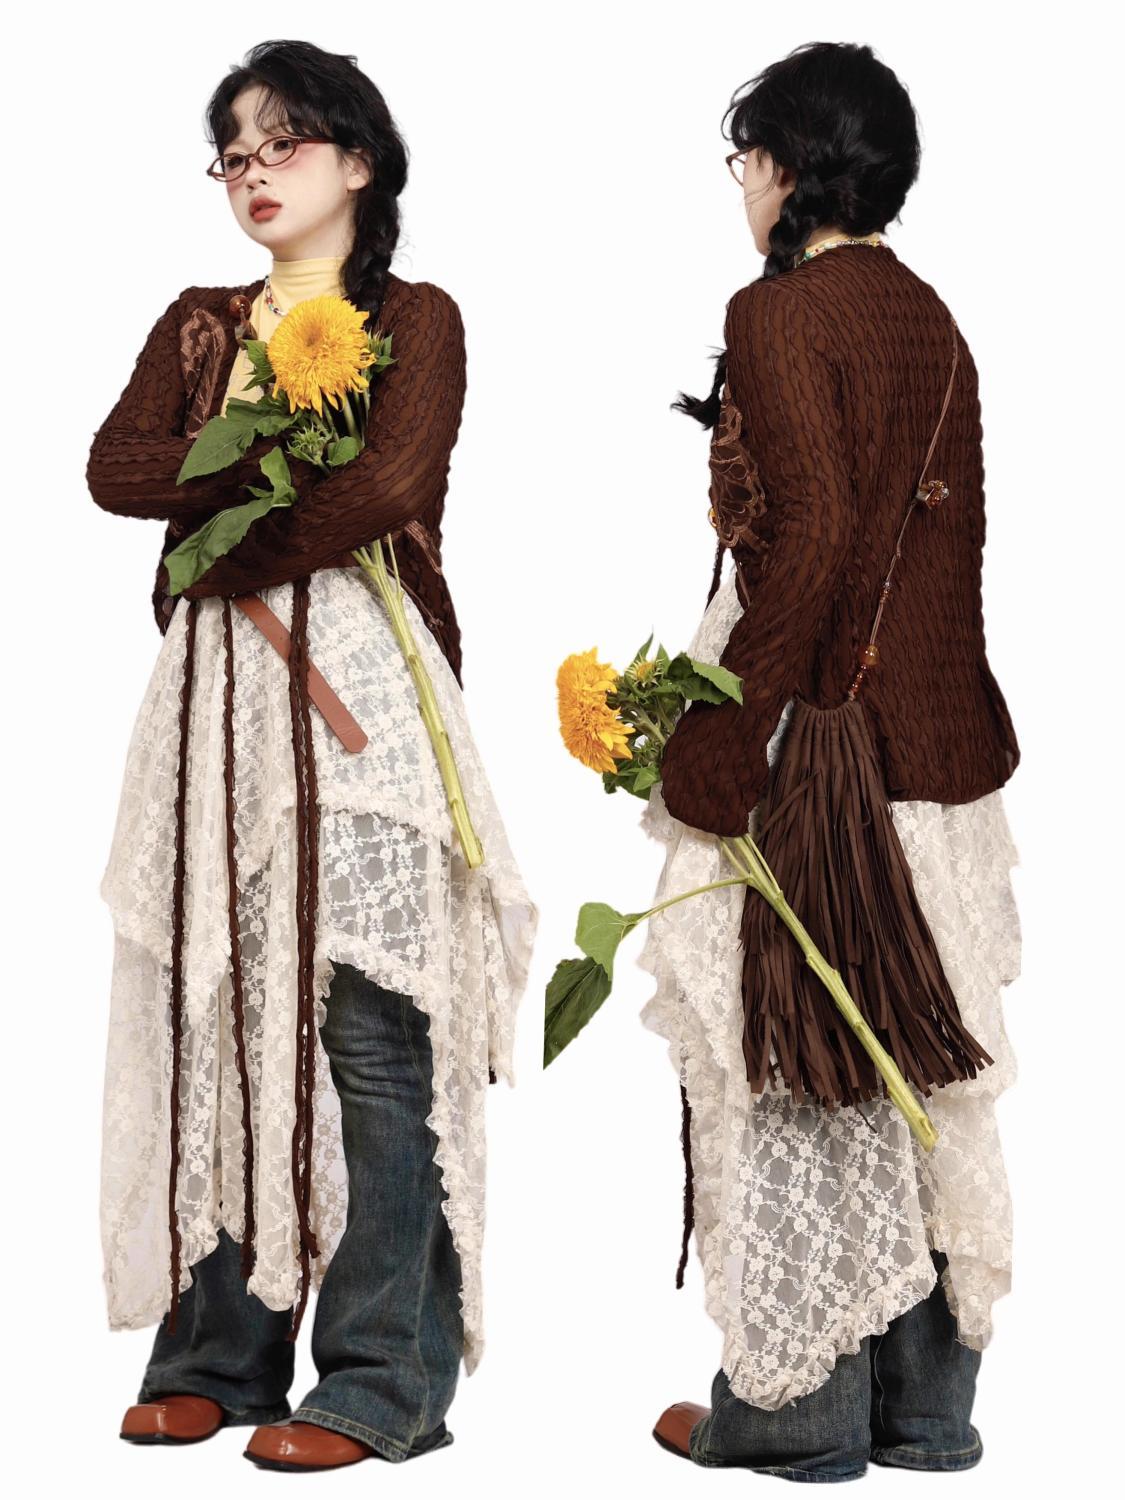 Versatile stacking irregular lace skirt Bohemian nomadic style versatile drape skirt